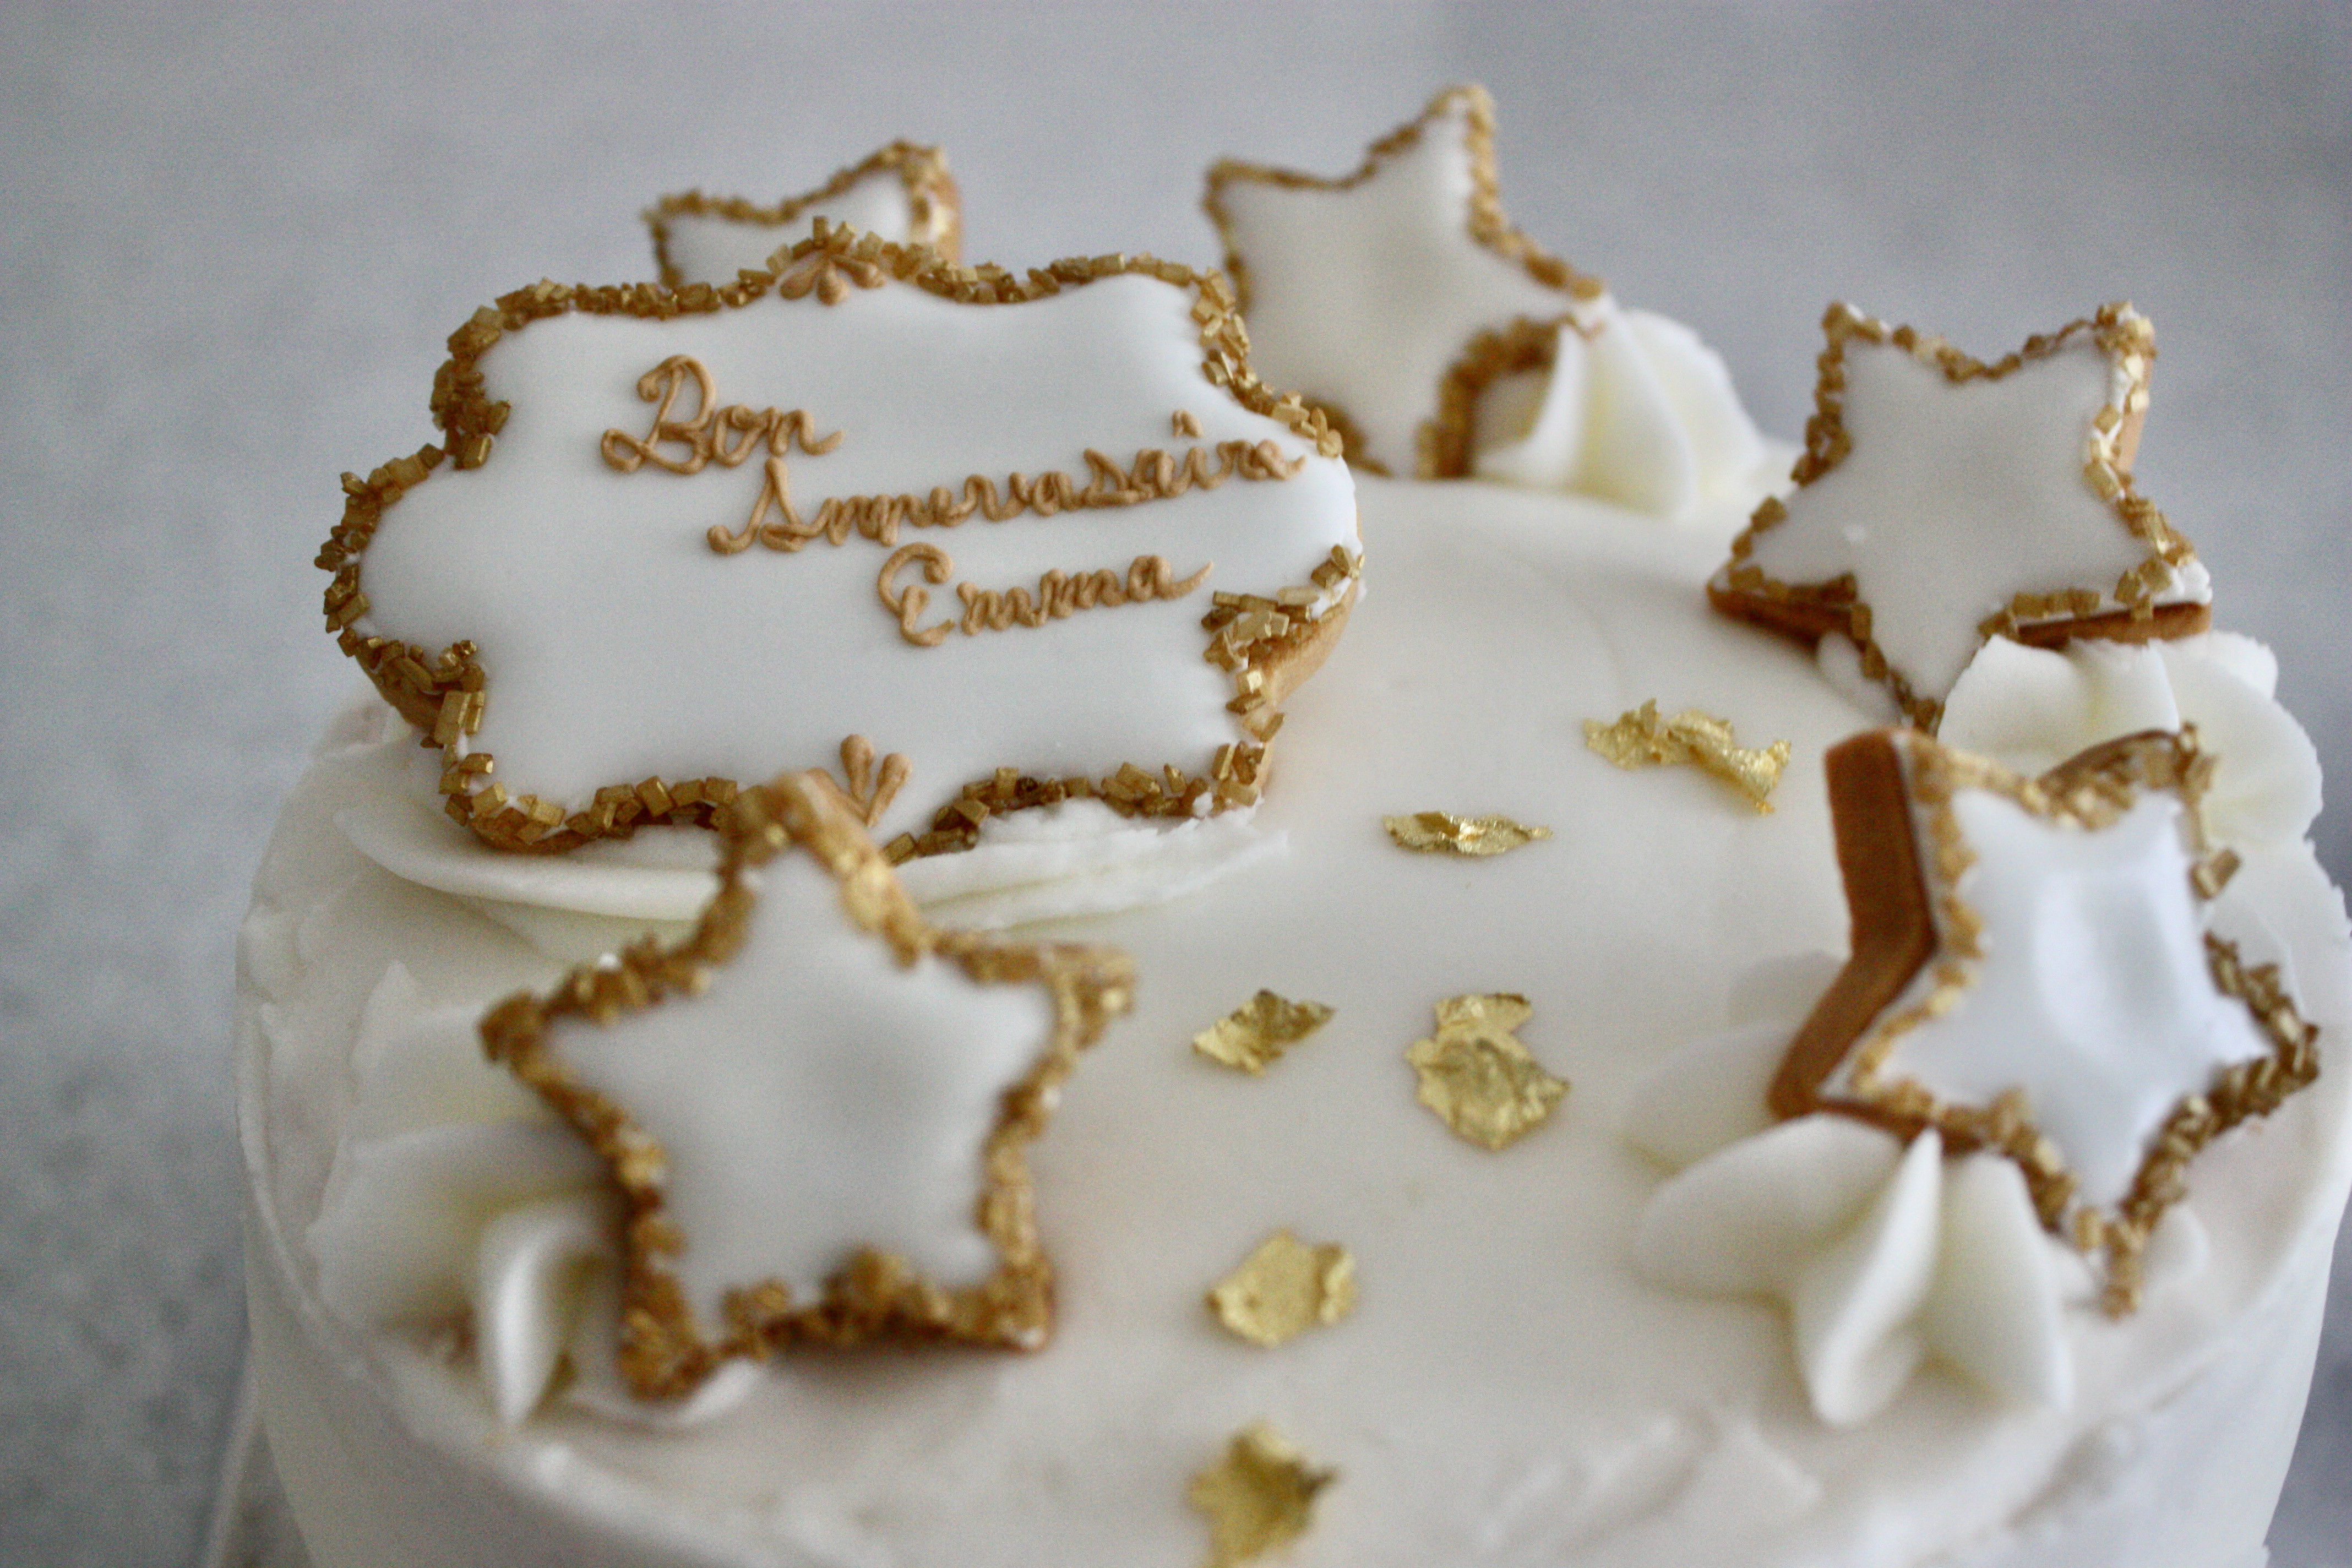 ホワイト ゴールドのバースデーケーキ パリ風 ママスタイル Blog Madame Figaro Jp フィガロジャポン